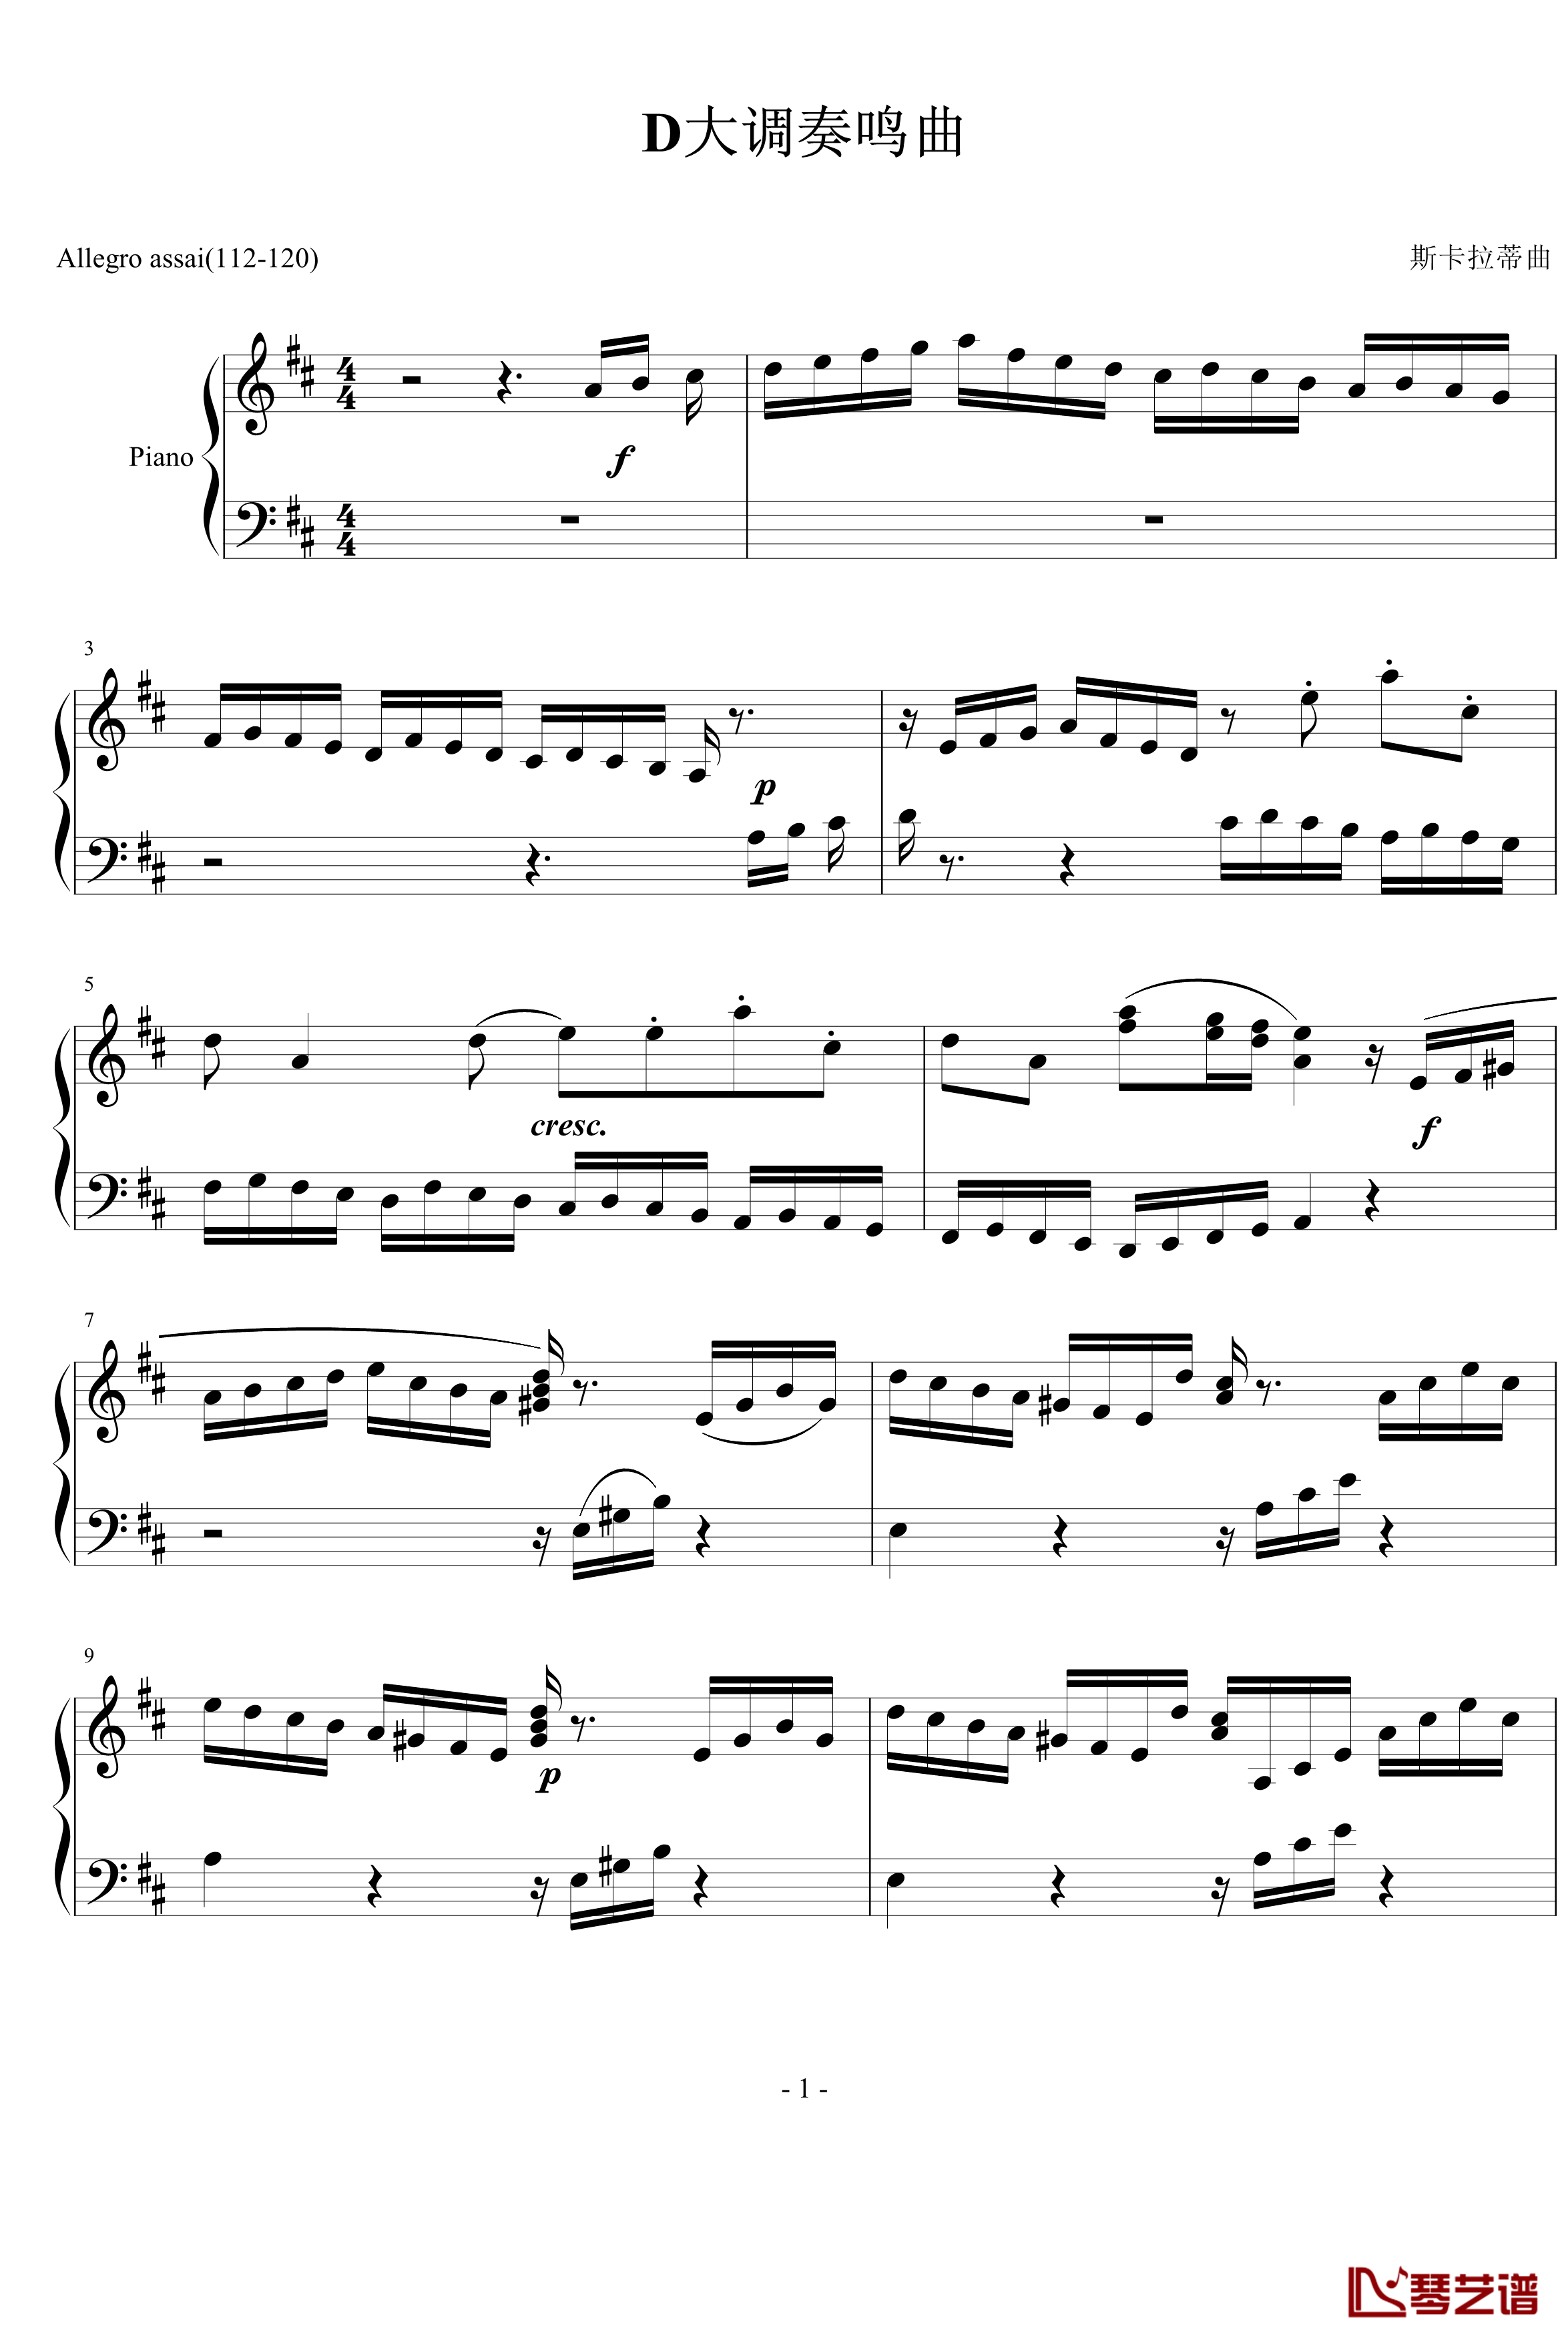 D大调奏鸣曲钢琴谱-世界名曲1